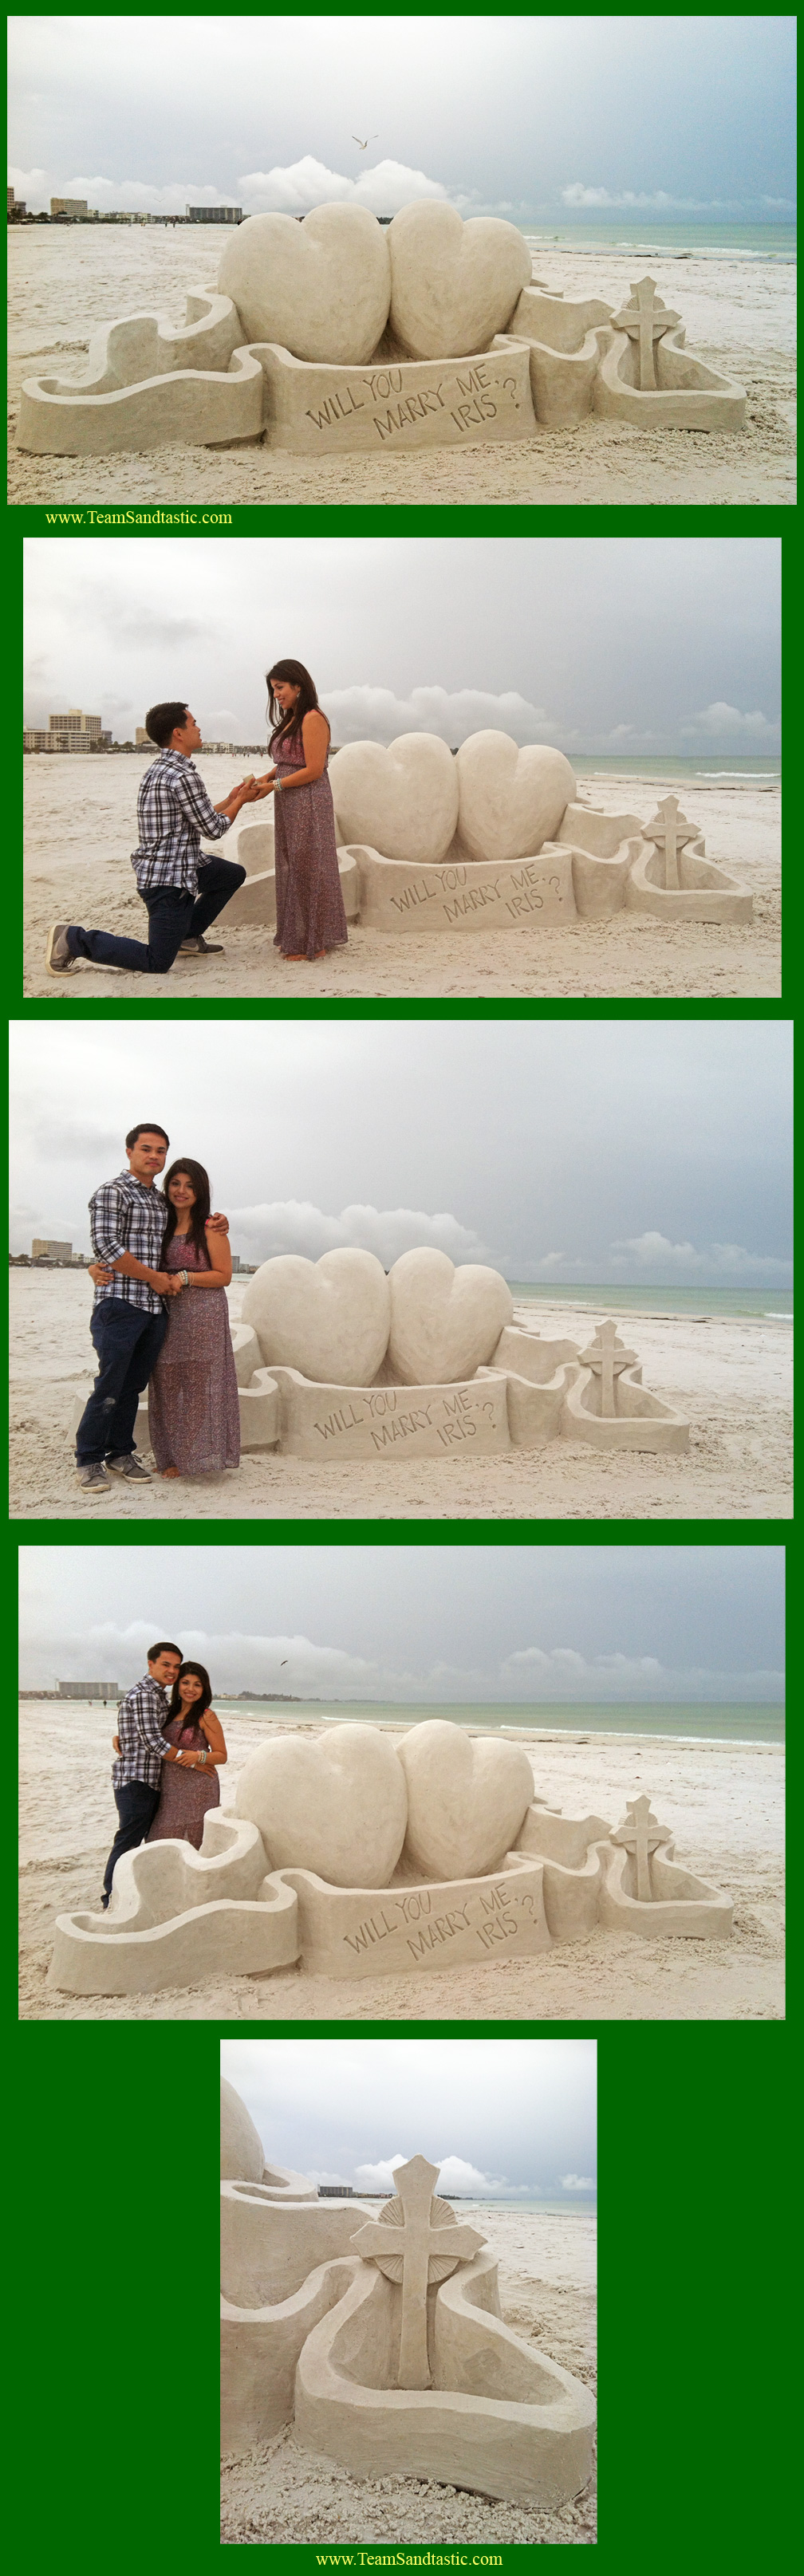 Proposal Sand Sculpture Deerfield Beach